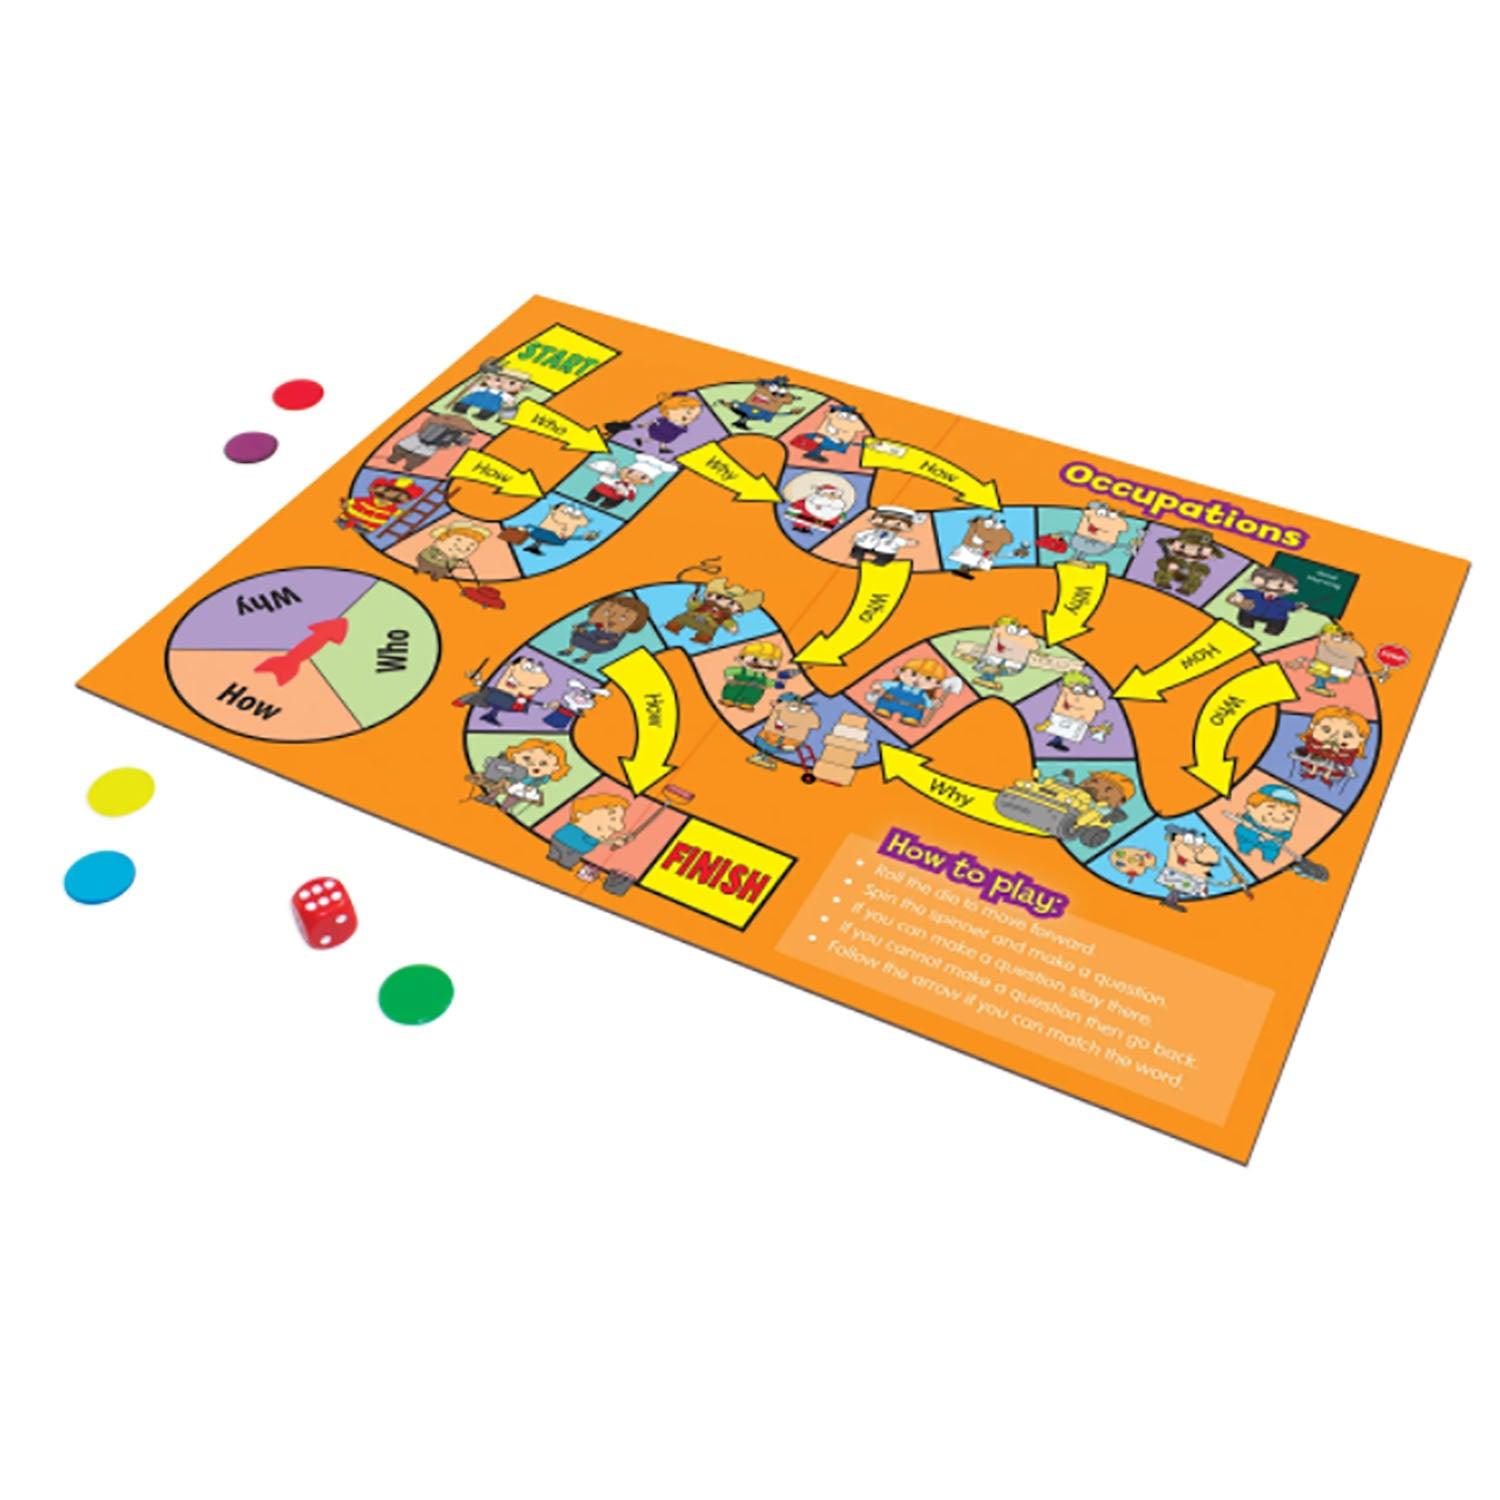 Speaking Board Games, Pack of 2 - Loomini